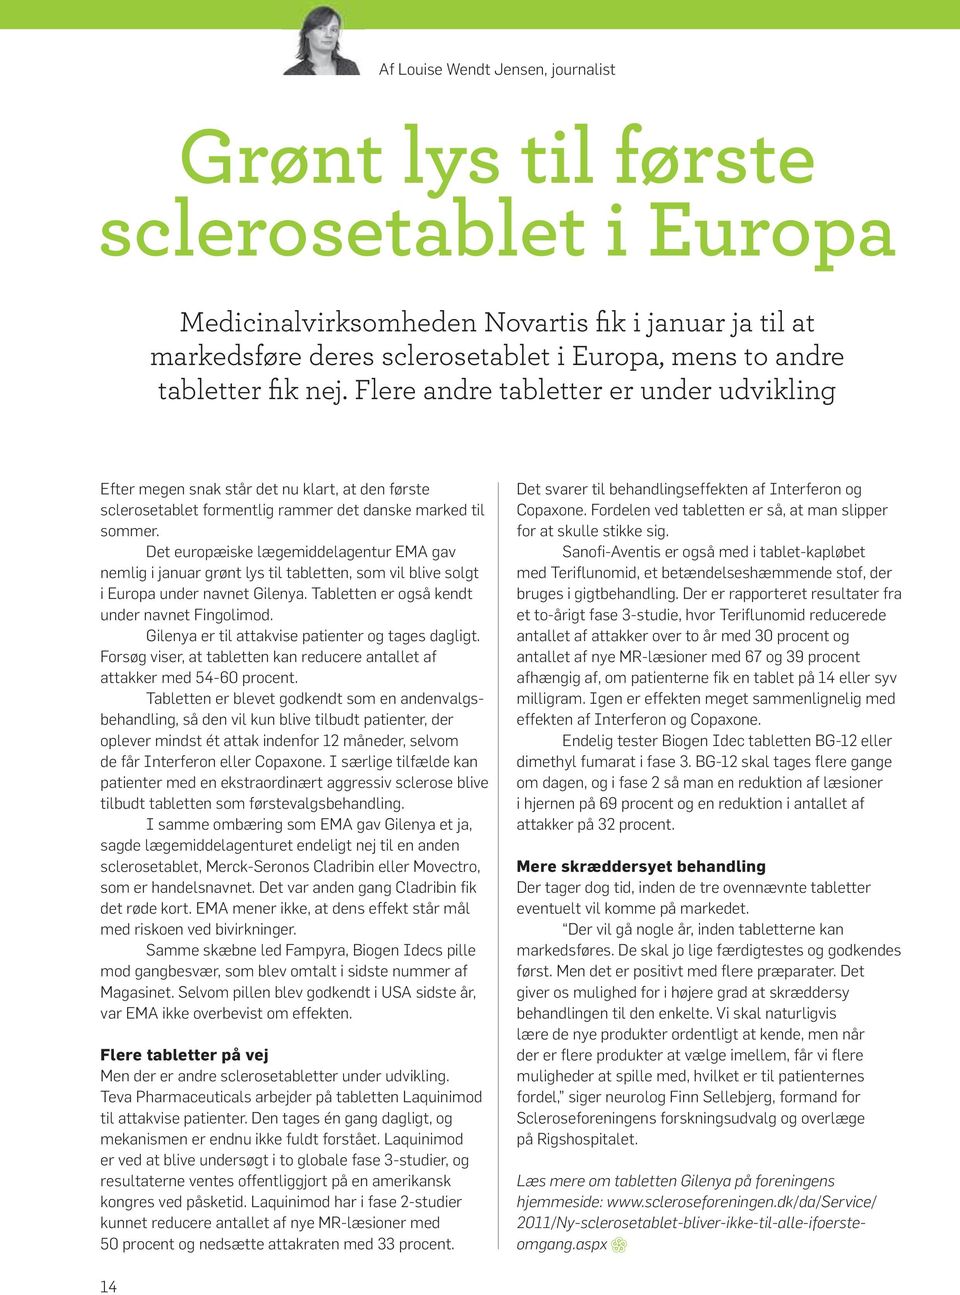 Det europæiske lægemiddelagentur EMA gav nemlig i januar grønt lys til tabletten, som vil blive solgt i Europa under navnet Gilenya. Tabletten er også kendt under navnet Fingolimod.